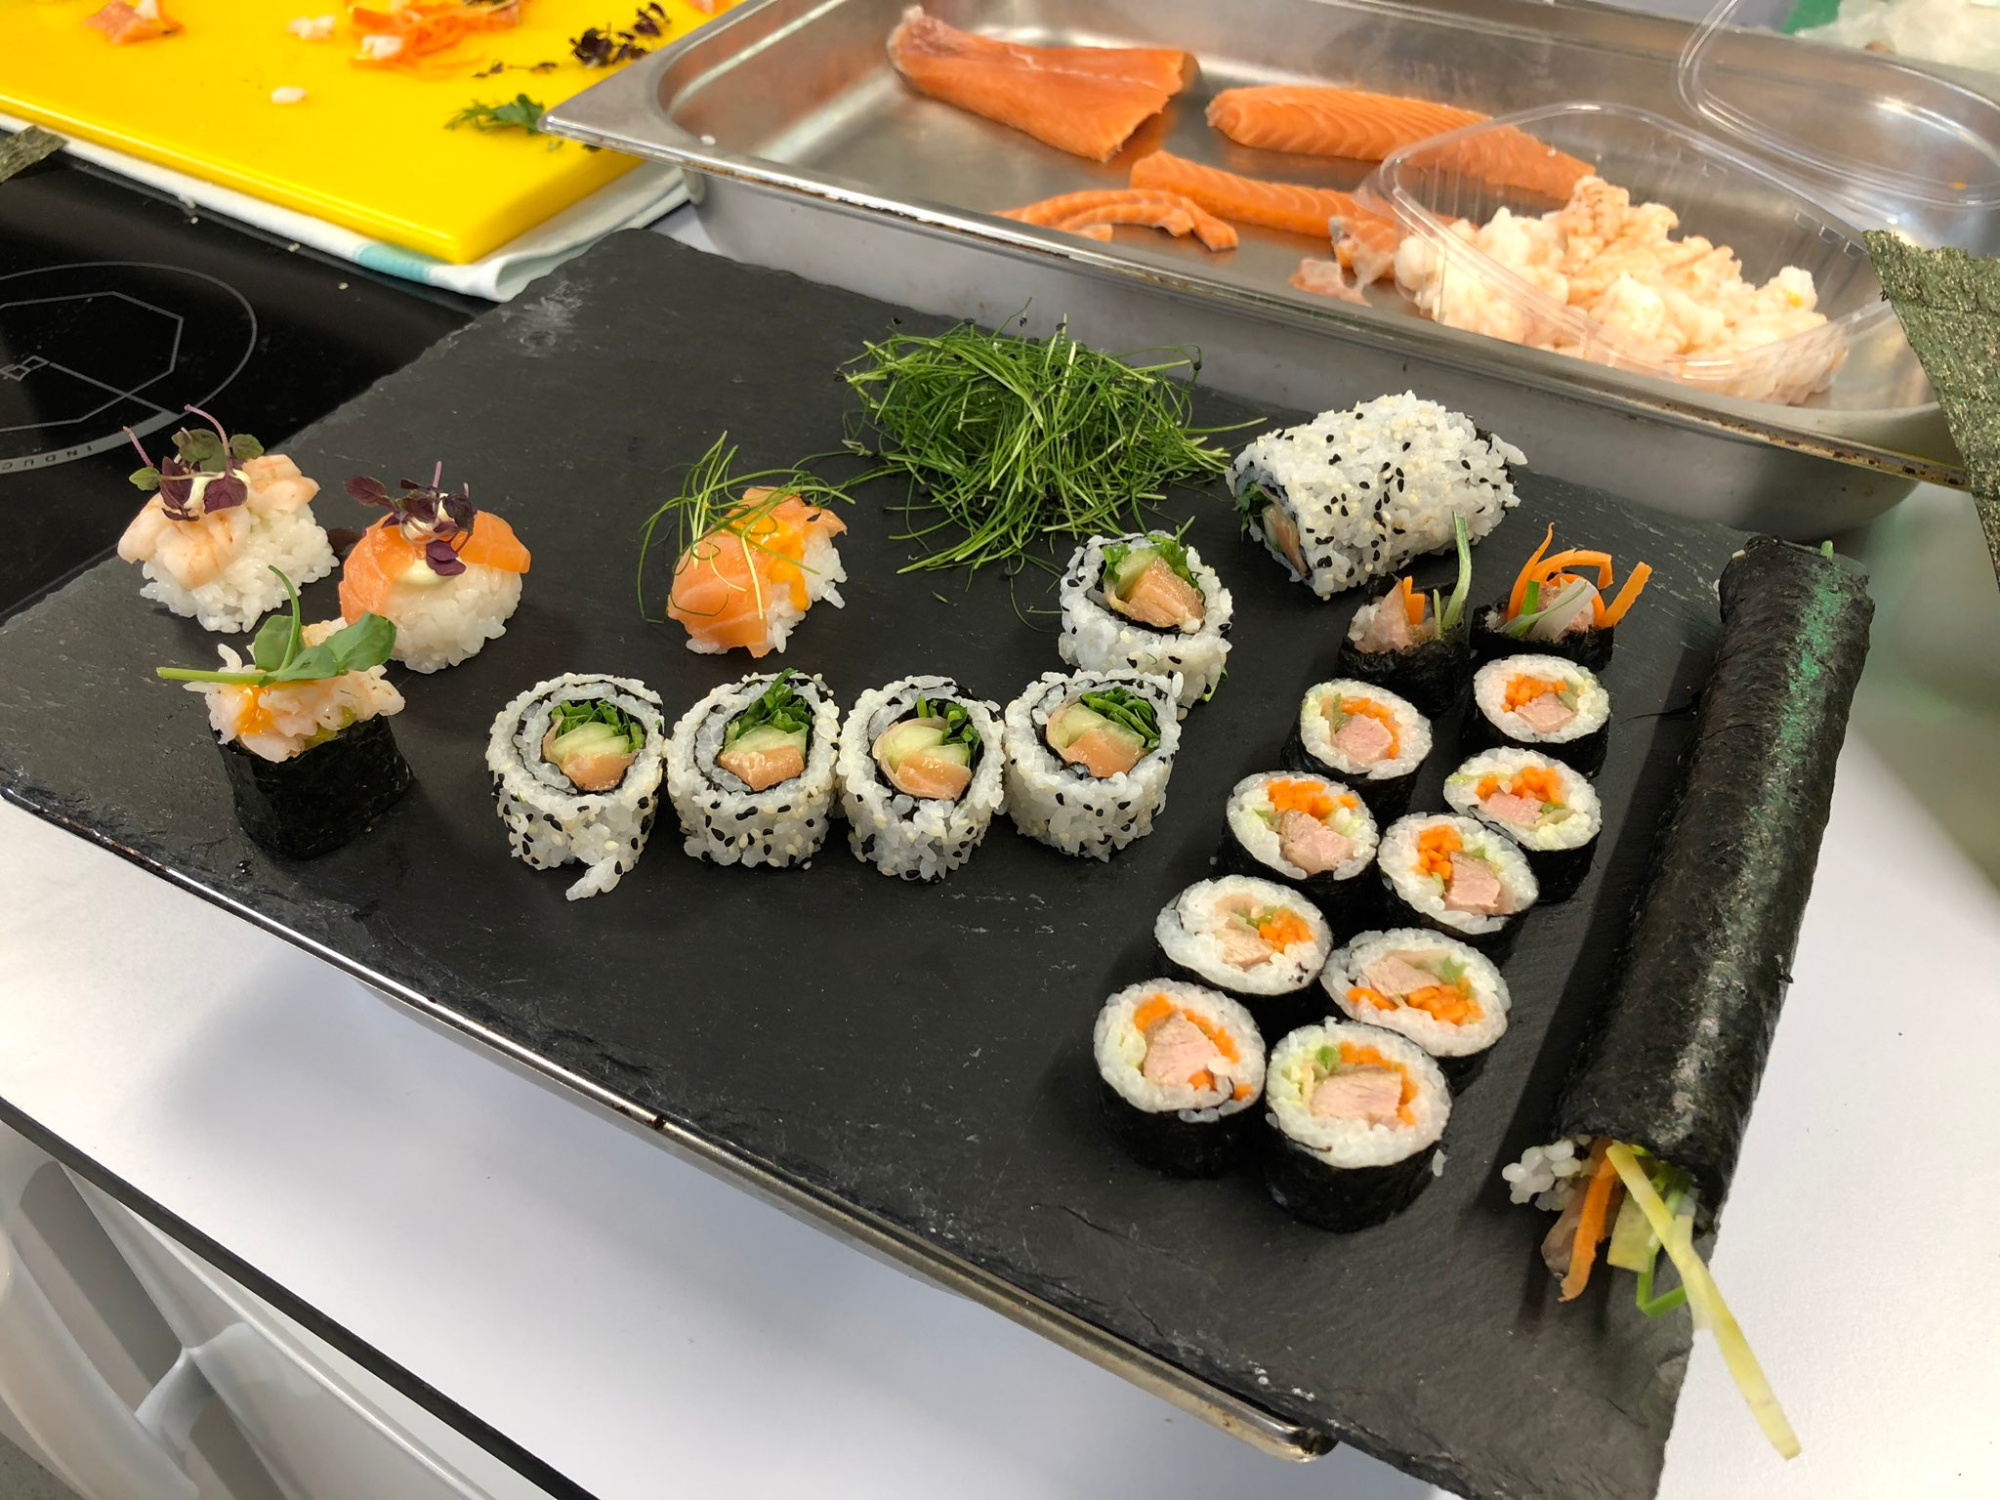 sushi workshop